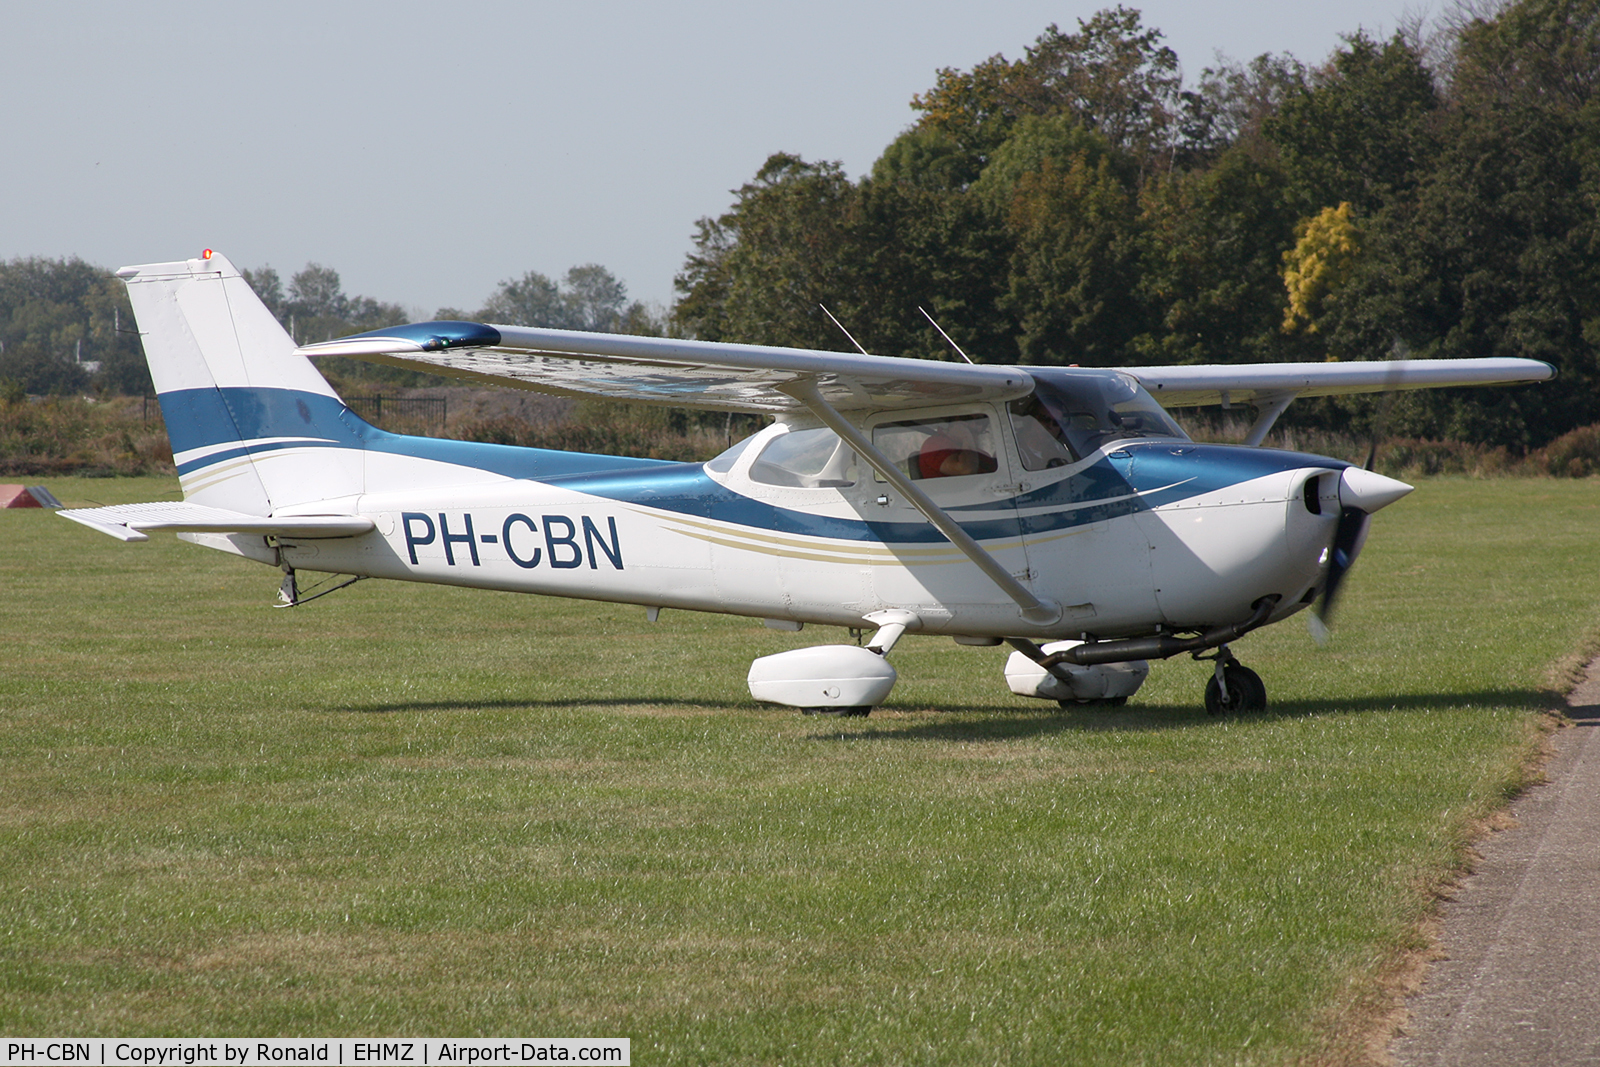 PH-CBN, 1980 Reims F172N Skyhawk C/N 1985, at ehmz